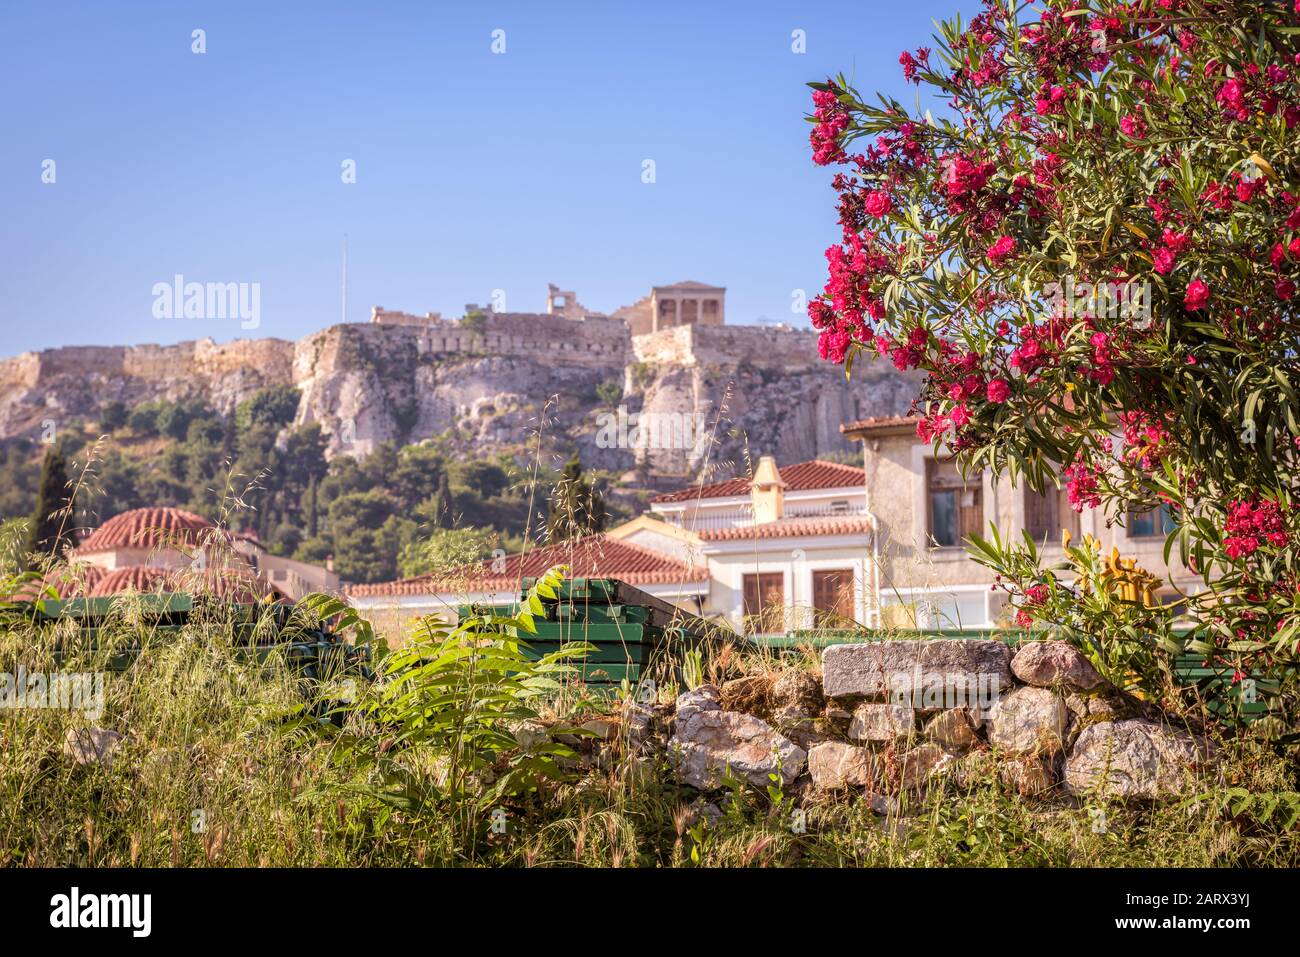 Antike griechische Ruinen mit Blumen mit Blick auf die Akropolis, Athen, Griechenland. Die berühmte Akropolis ist die wichtigste Touristenattraktion Athens. Landschaftlich schönes wunderschönes Fu Stockfoto